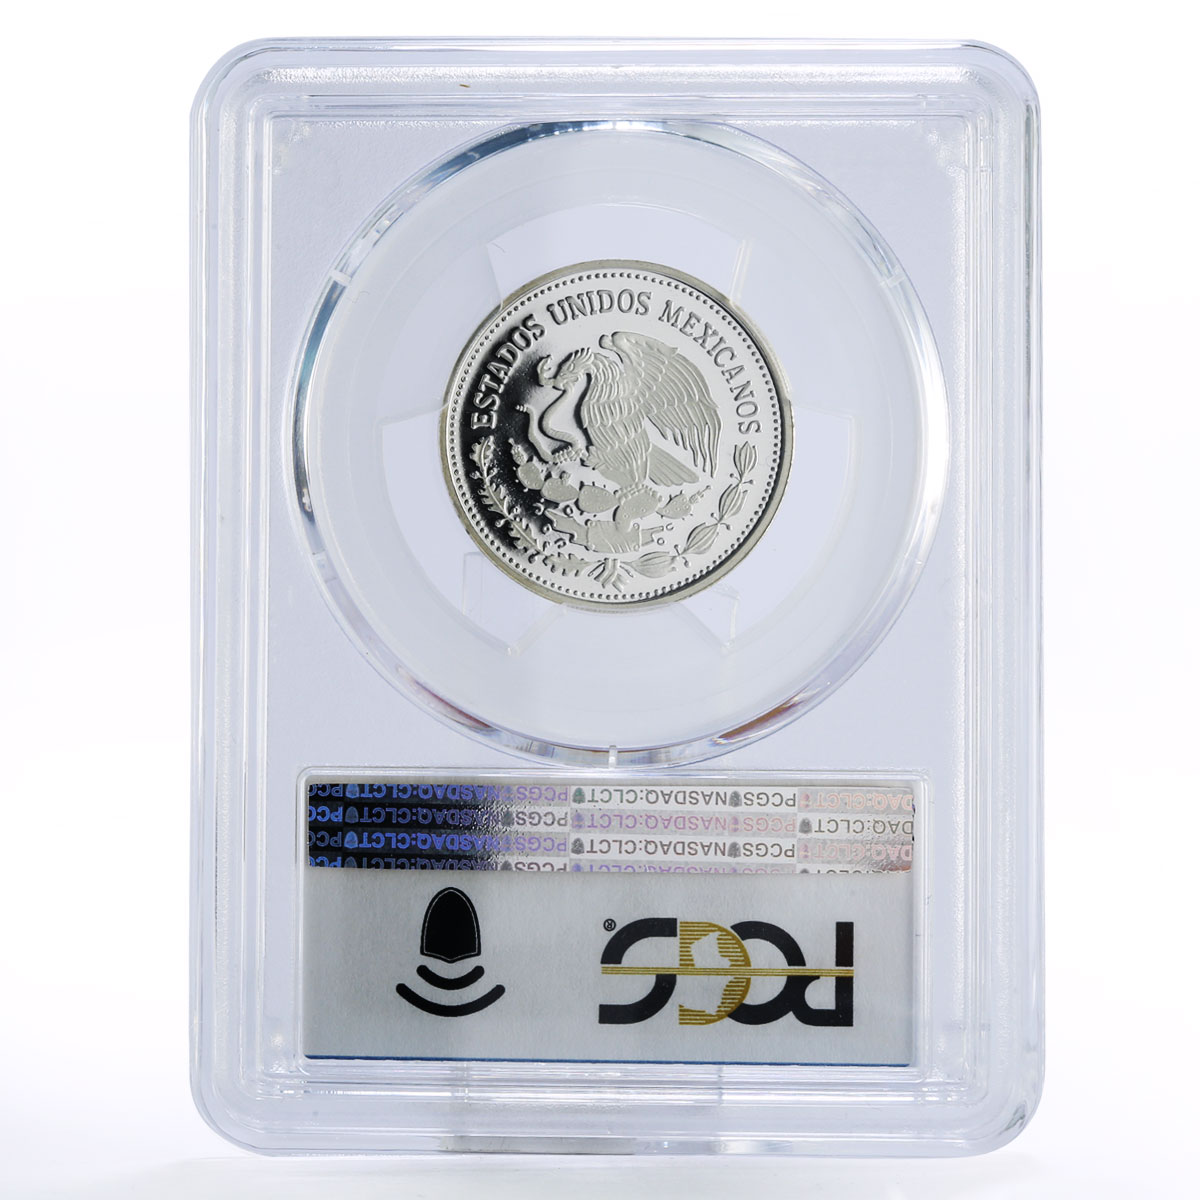 Mexico 25 pesos Football World Cup in Mexico PR69 PCGS silver coin 1985